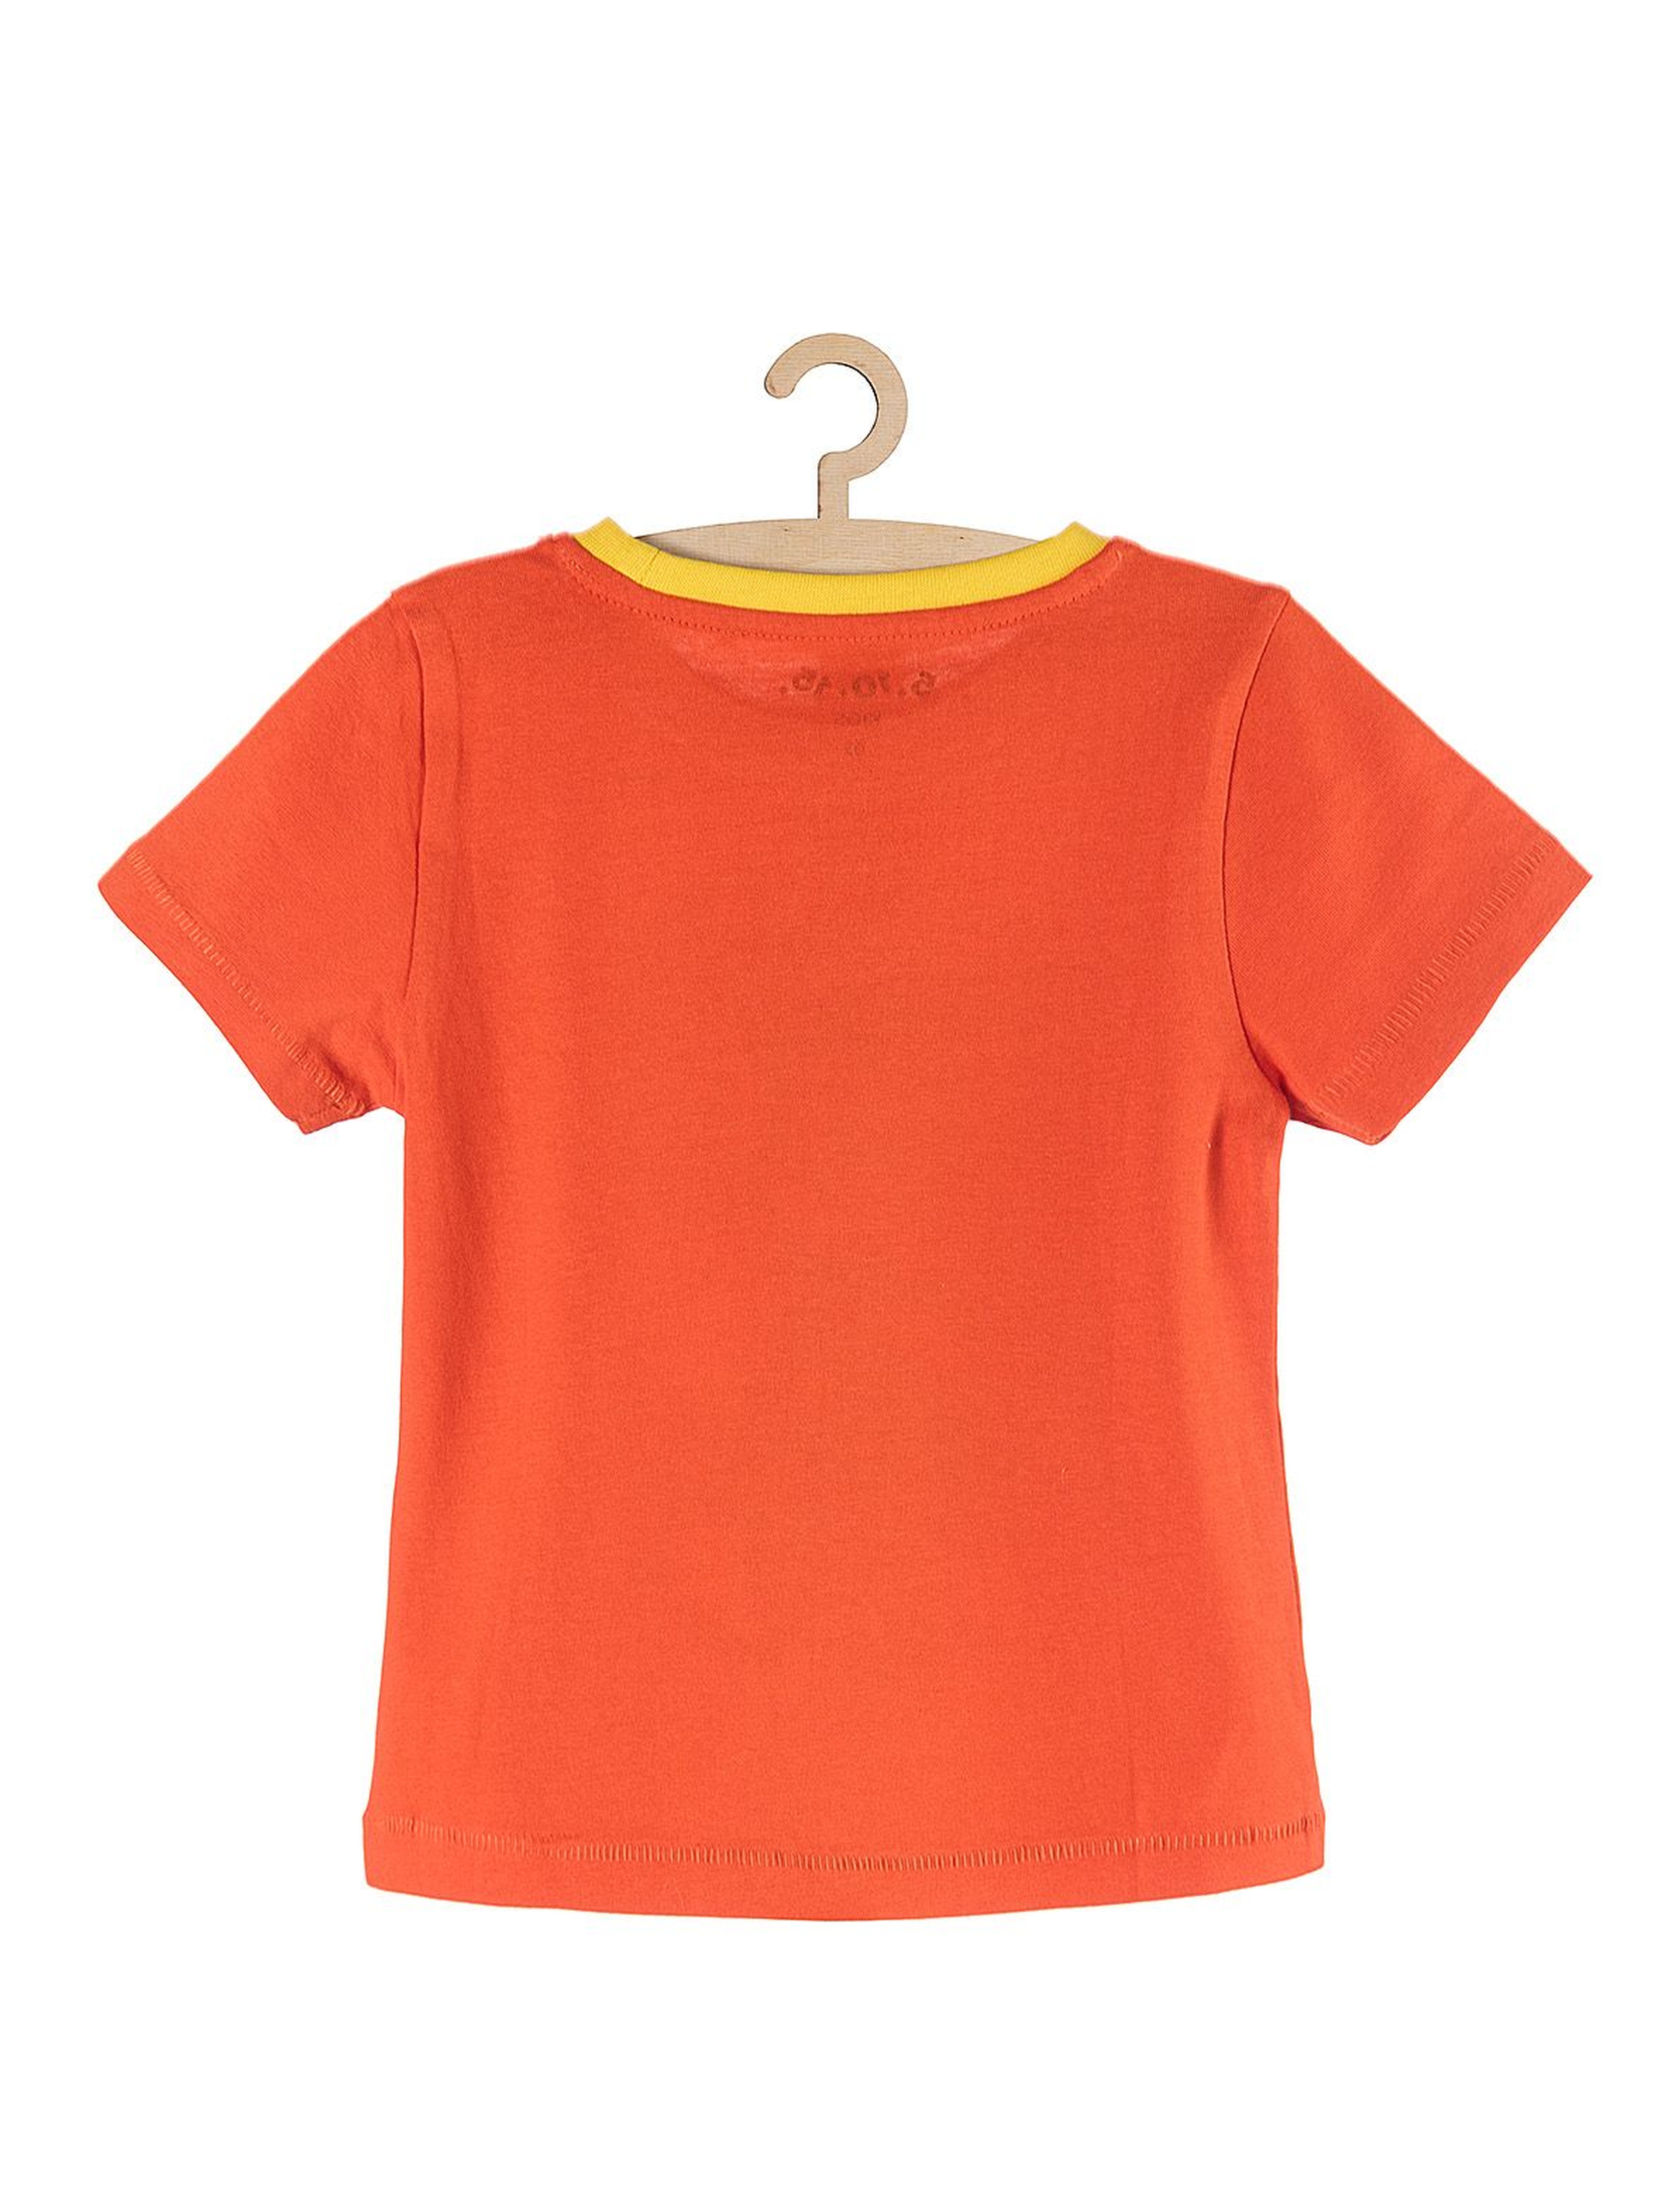 Koszulka chłopięca bawełniana pomarańczowa z kolorowymi nadrukami